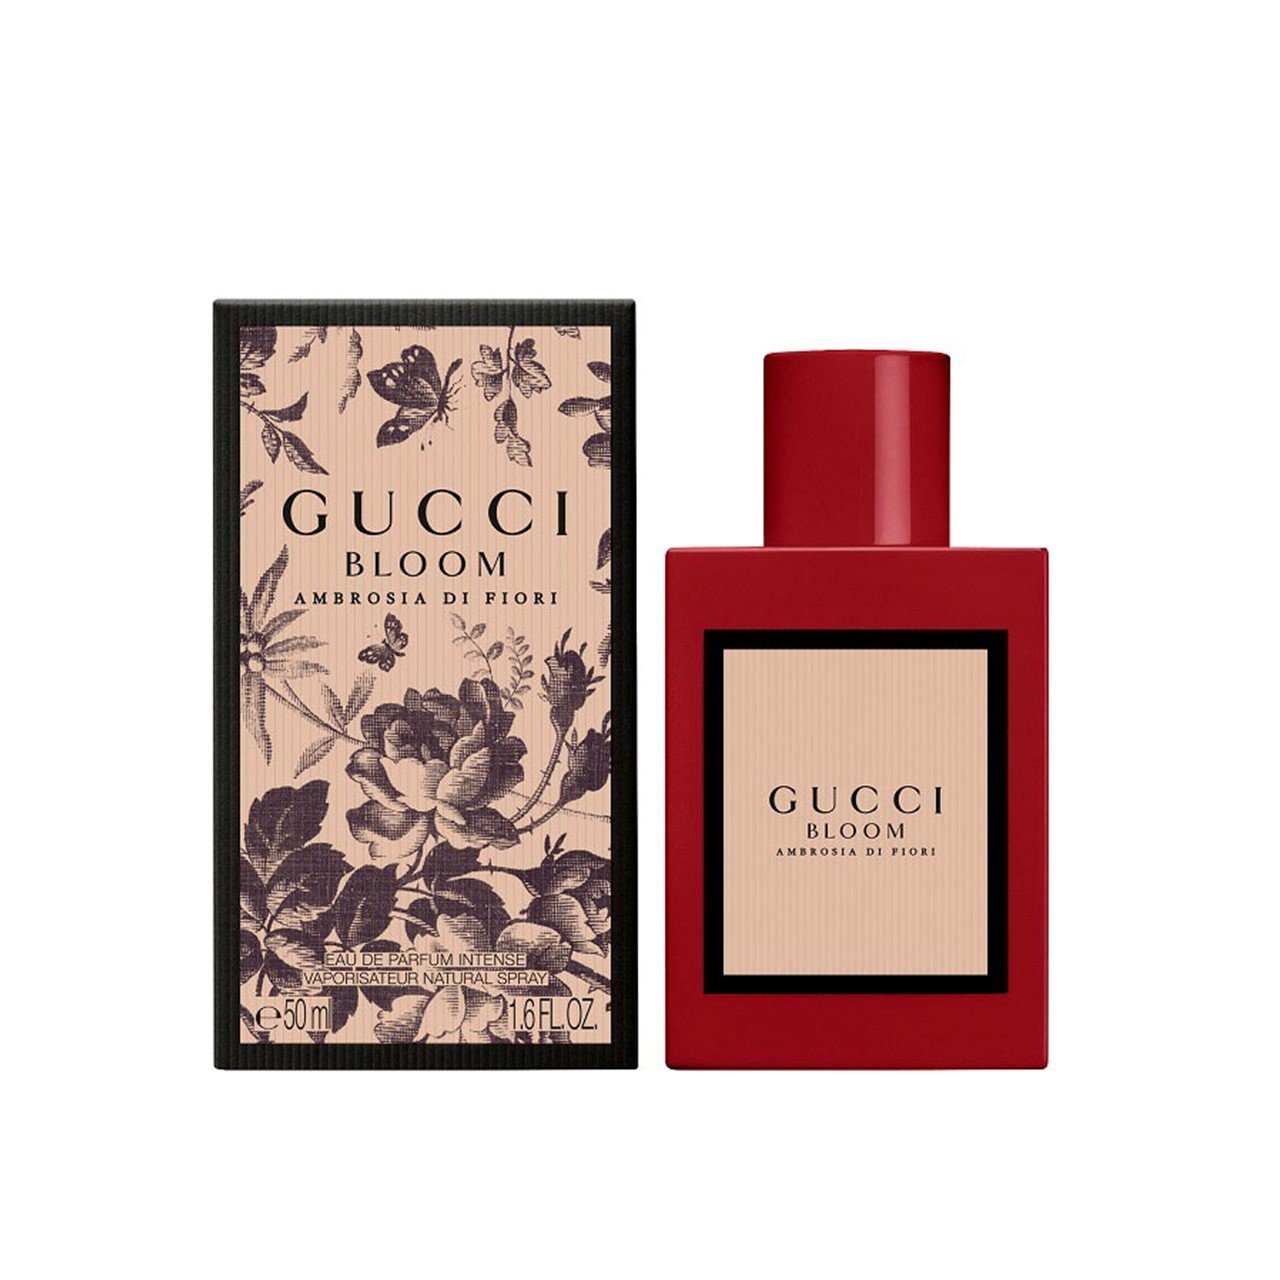 Gucci Bloom Ambrosia Di Fiori Eau de Parfum Intense 50ml (1.7fl oz)